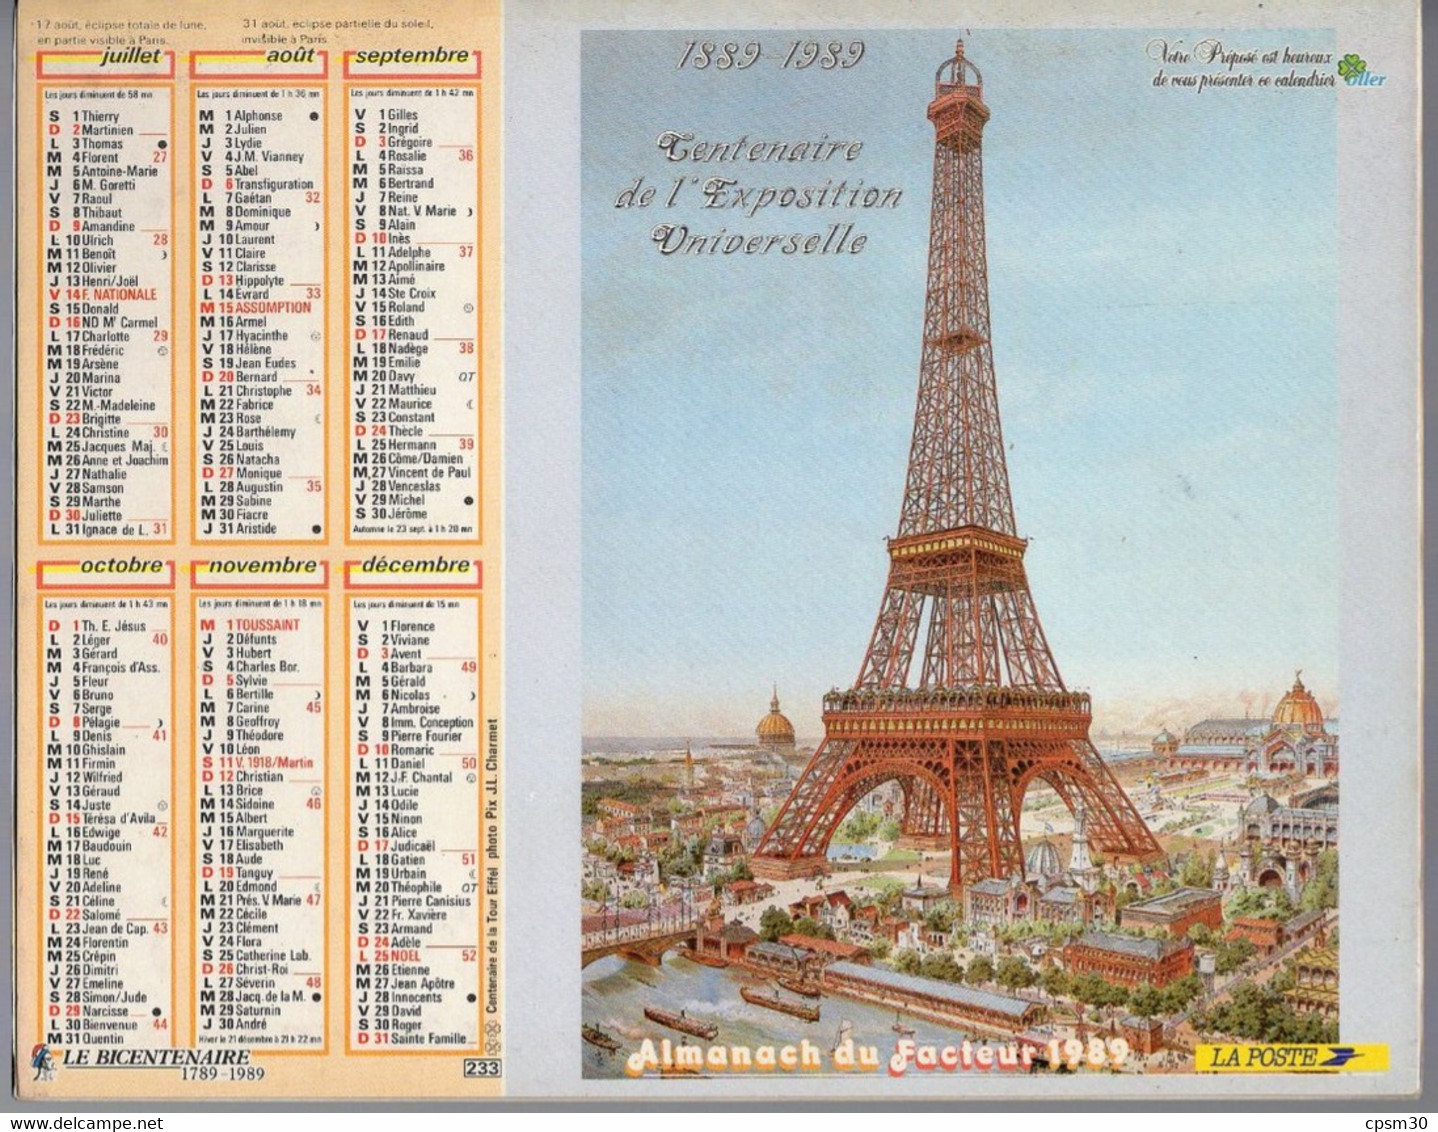 CALENDRIER GF 1978 - Paris Tour Eiffel 75, maison fleurie dans le Nord, imprimeur Oberthur Rennes (calendrier double)